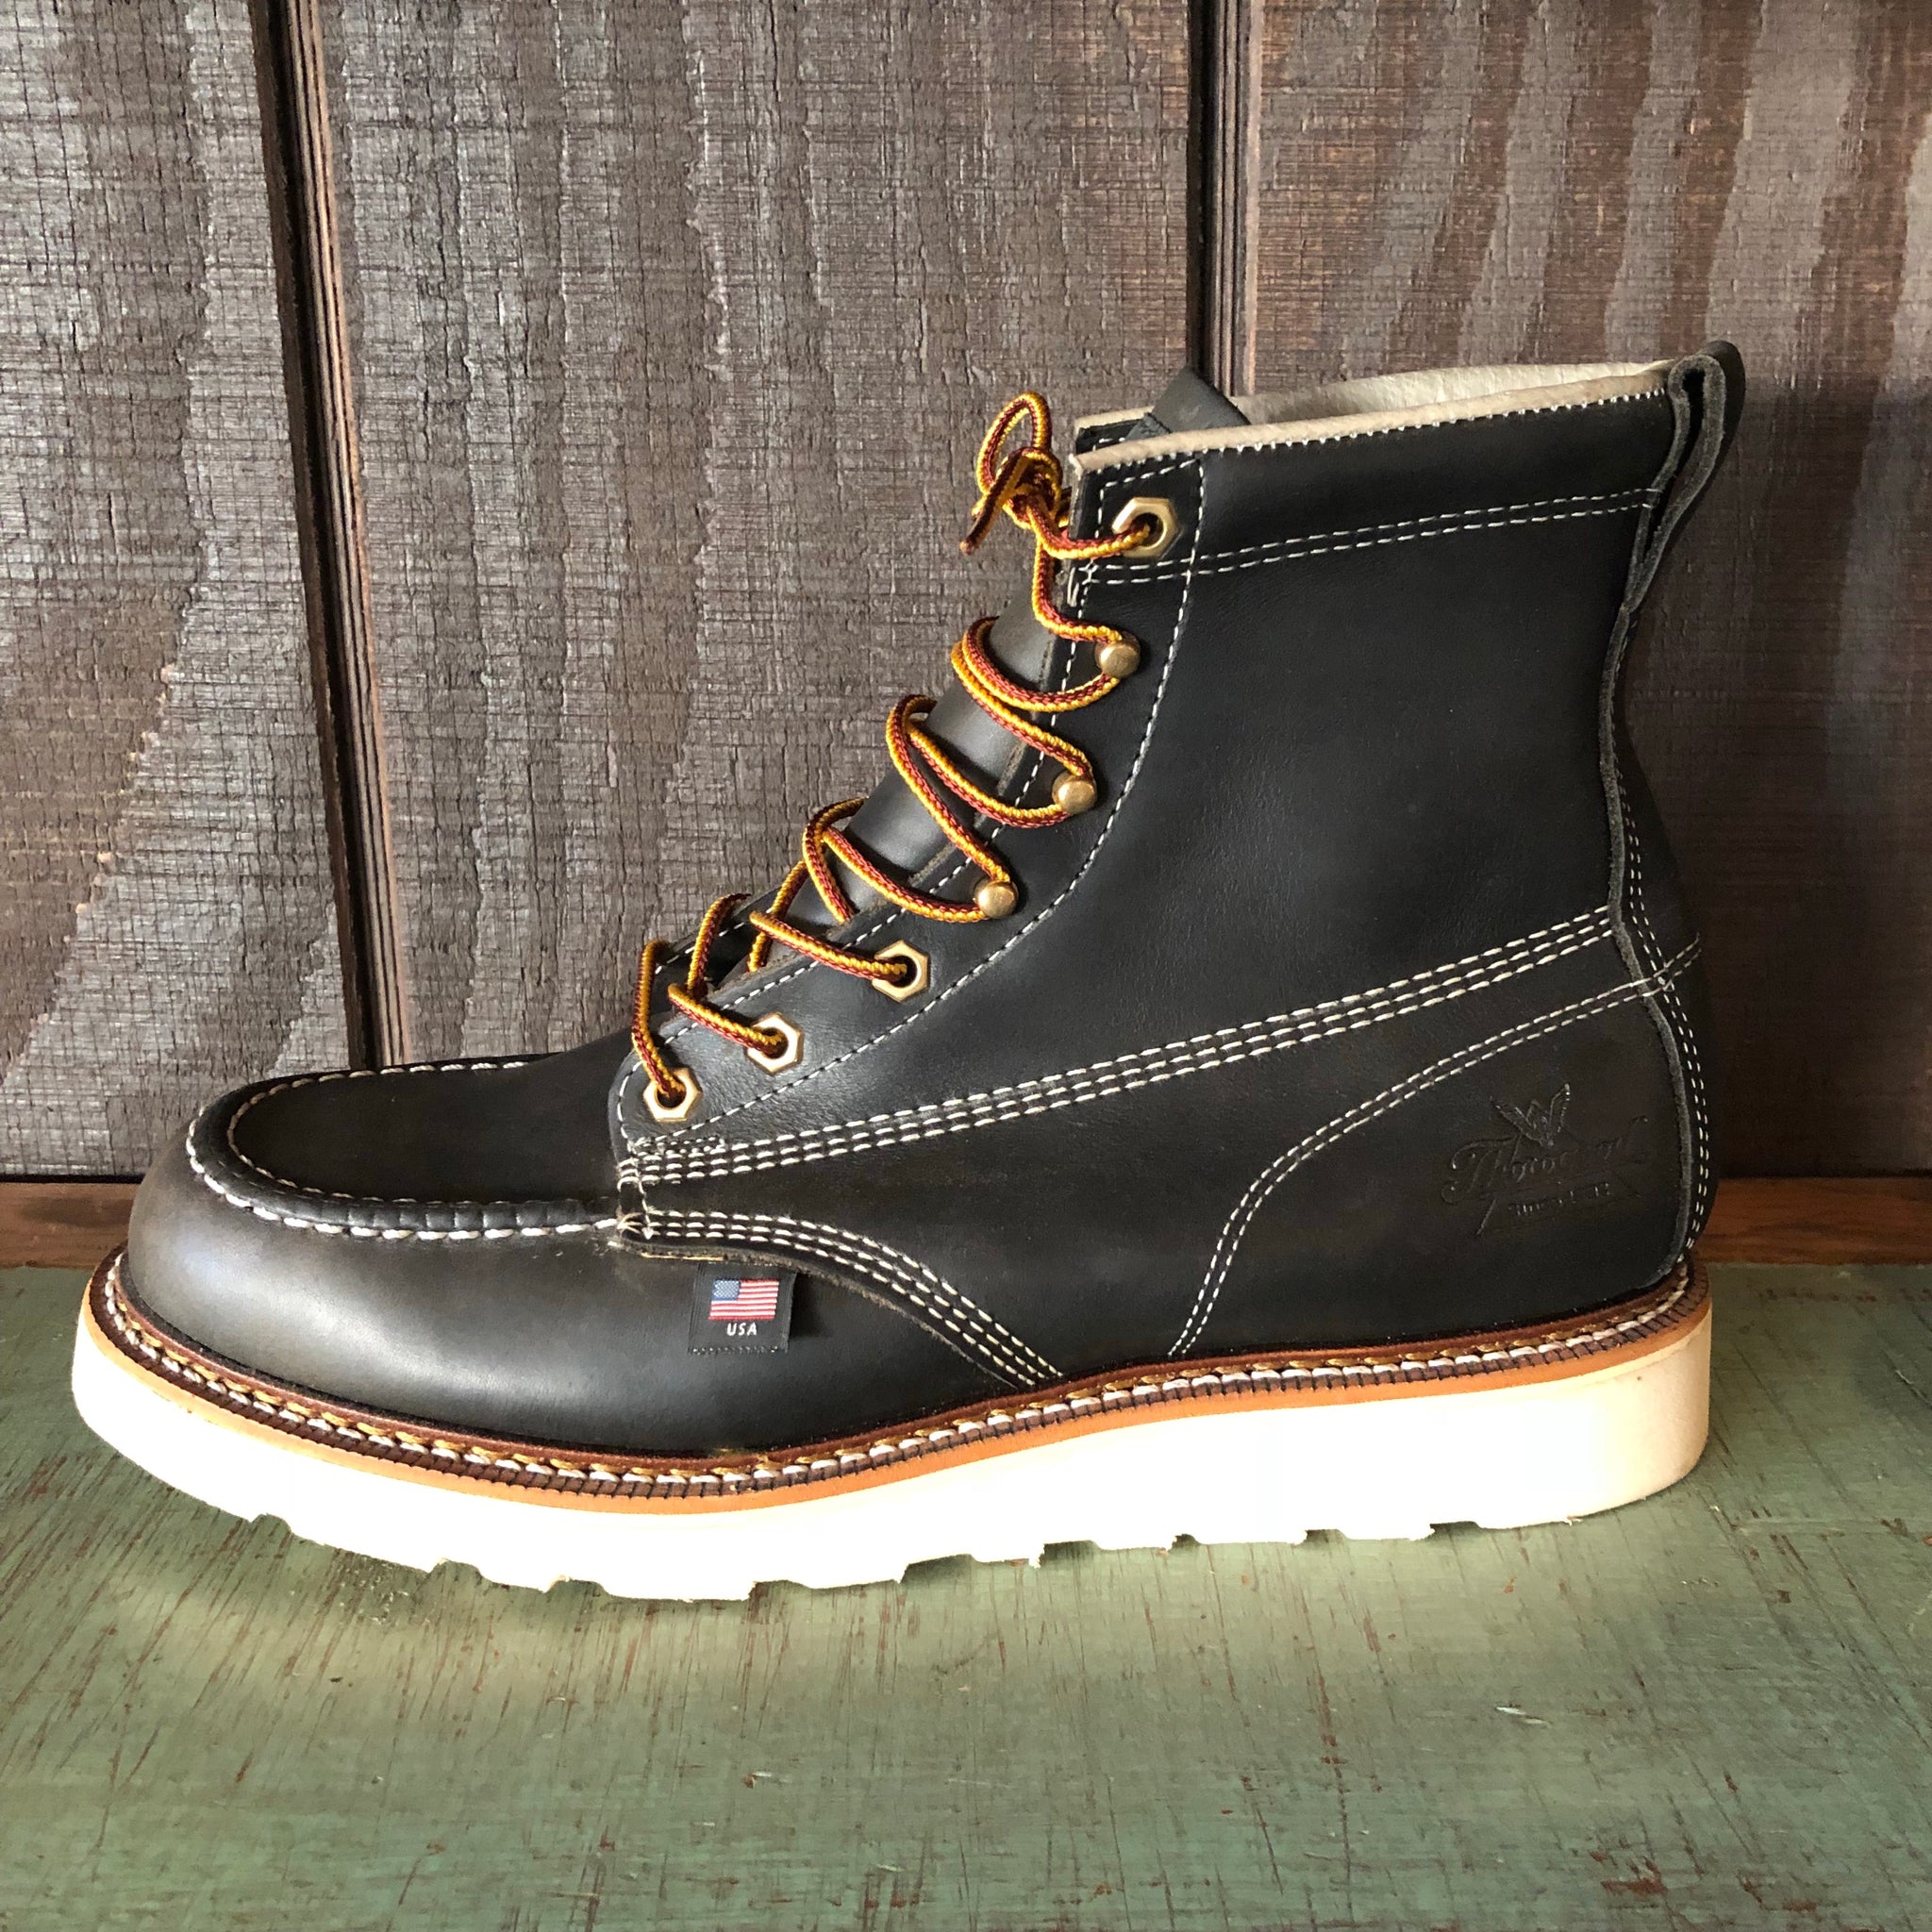 Thorogood 6” Moc Toe Boots - Black 